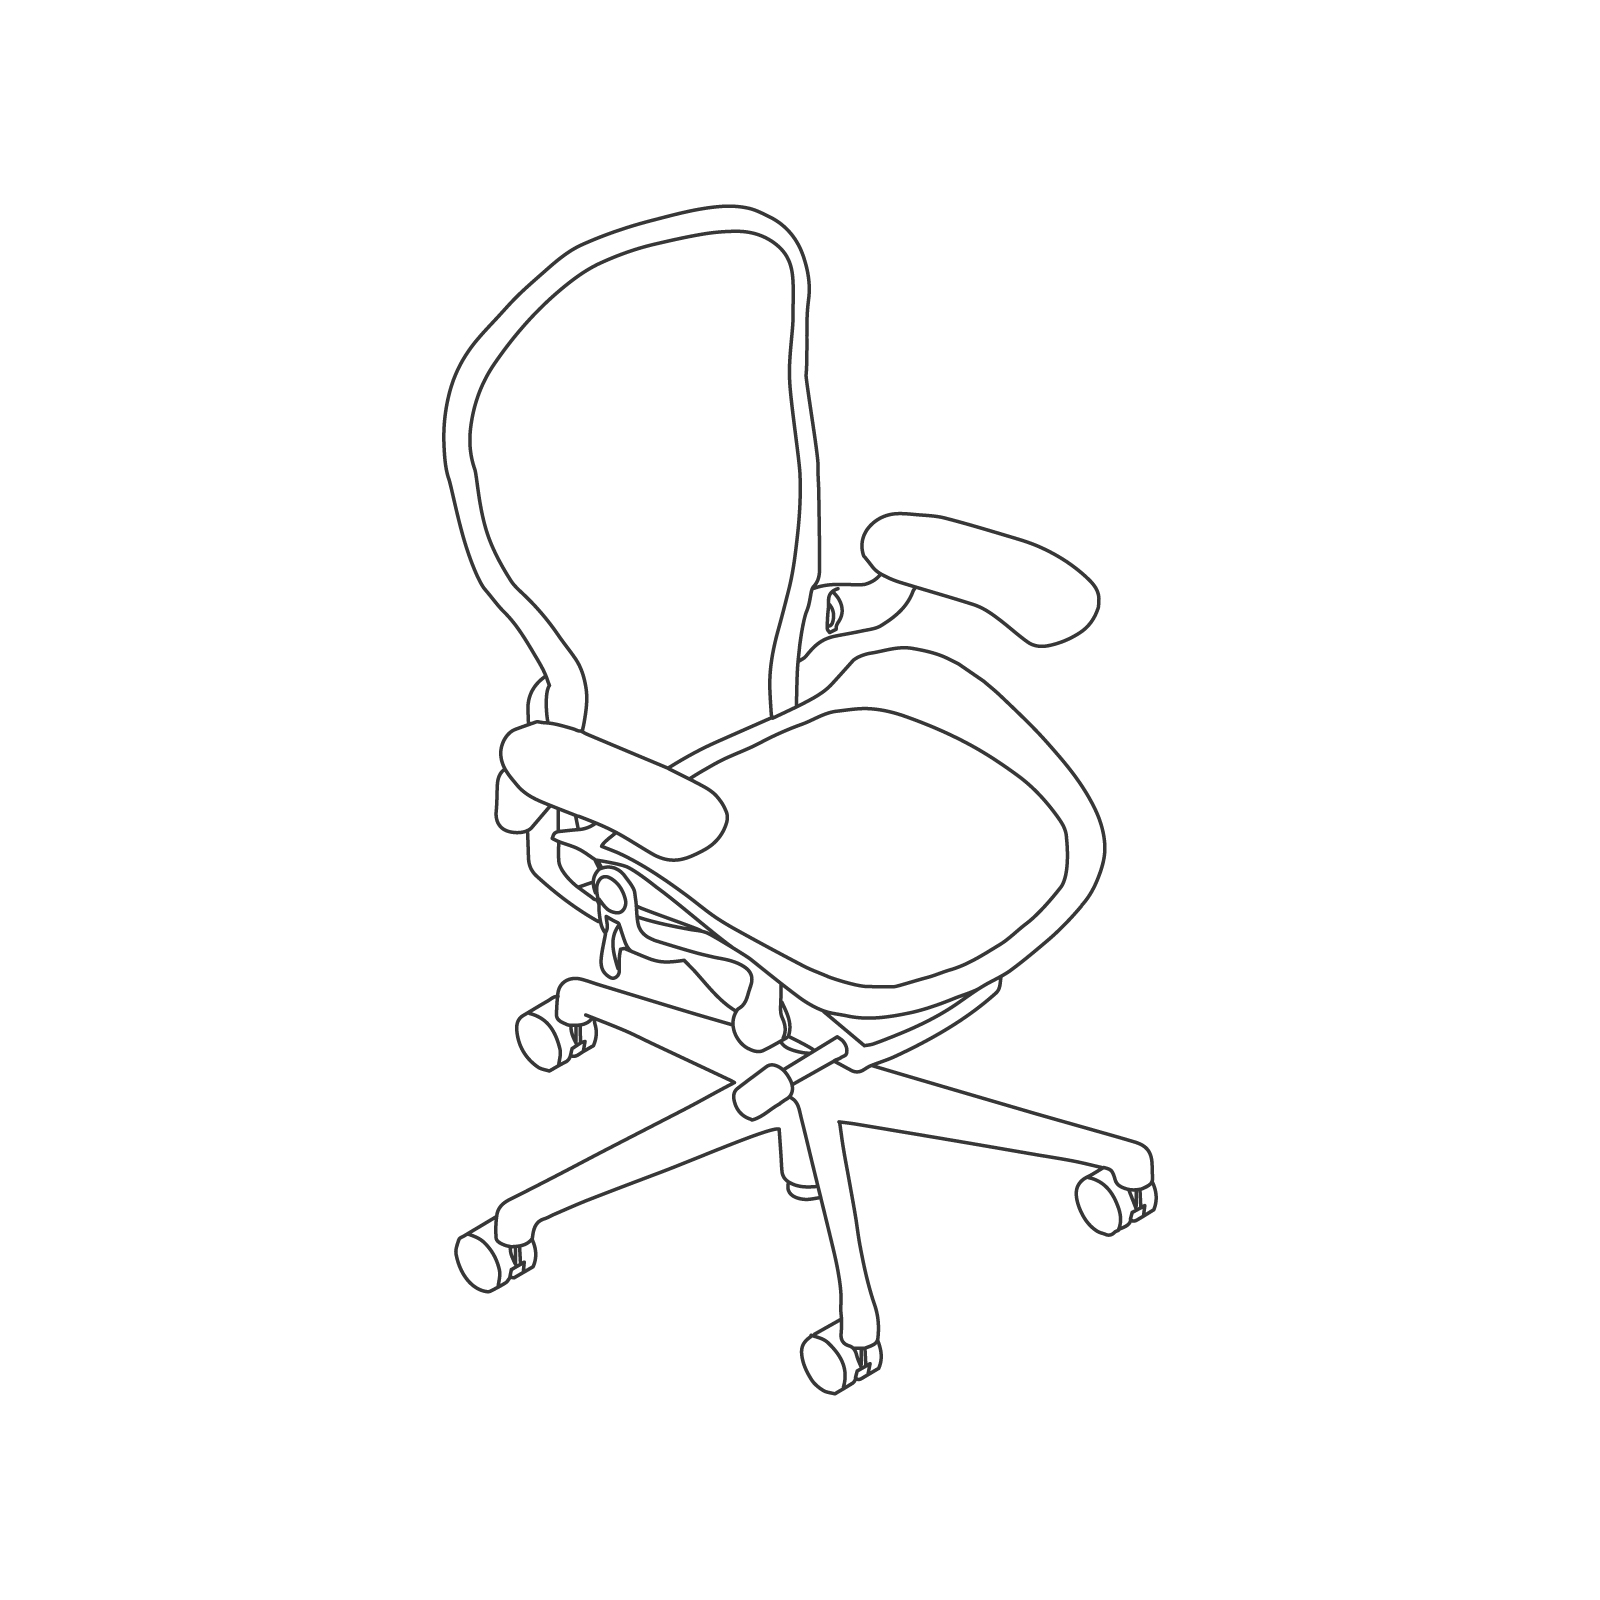 线描图 - Aeron座椅–C款–高度可调式扶手